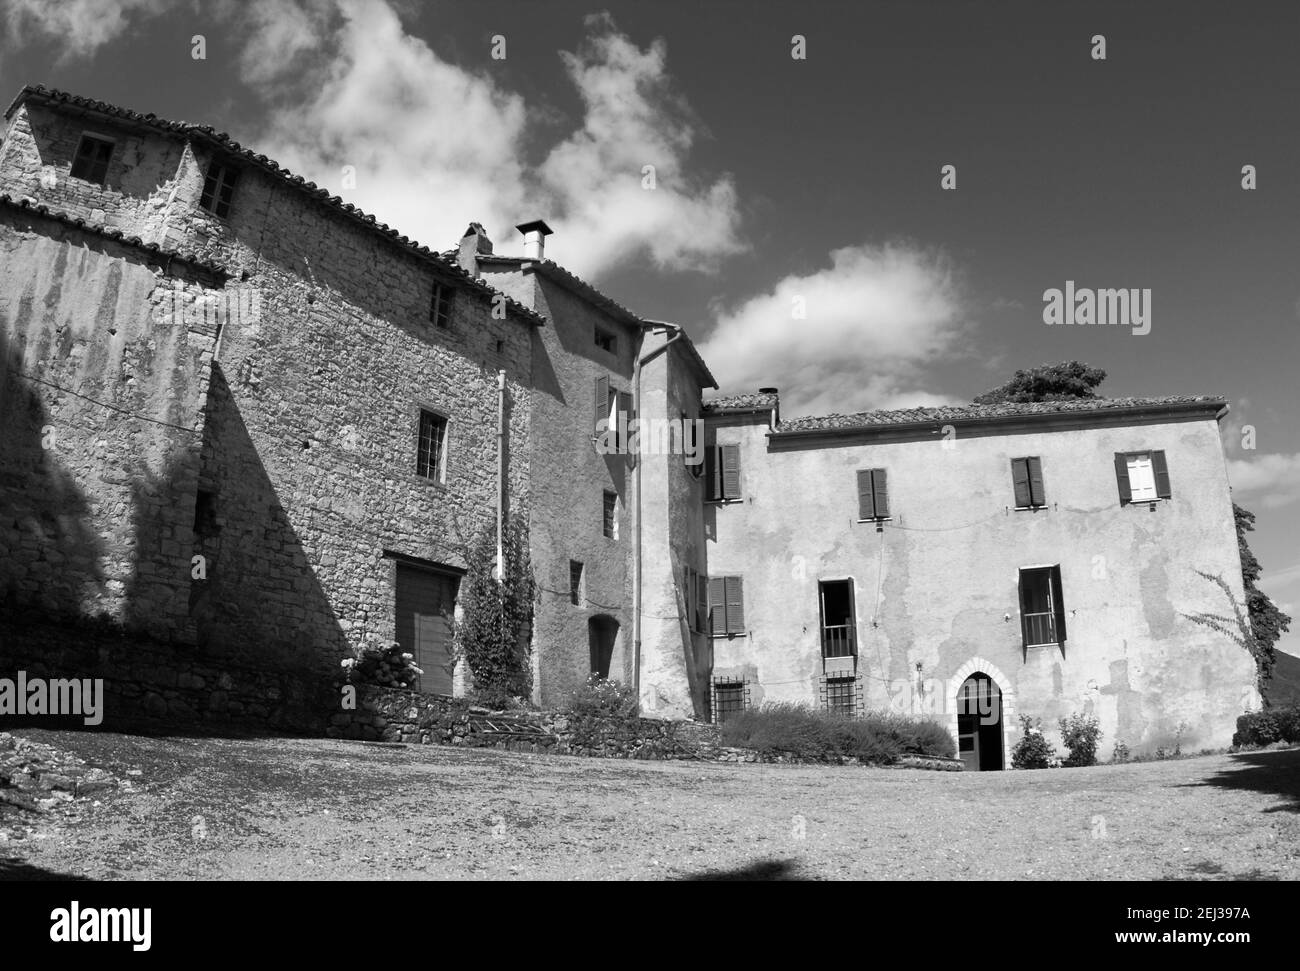 Immagine monocromatica, in bianco e nero di una tradizionale casa rurale, Migiana di Monte Tezio, vicino a Ponte Pattoli, Perugia, Umbria, Italia Foto Stock